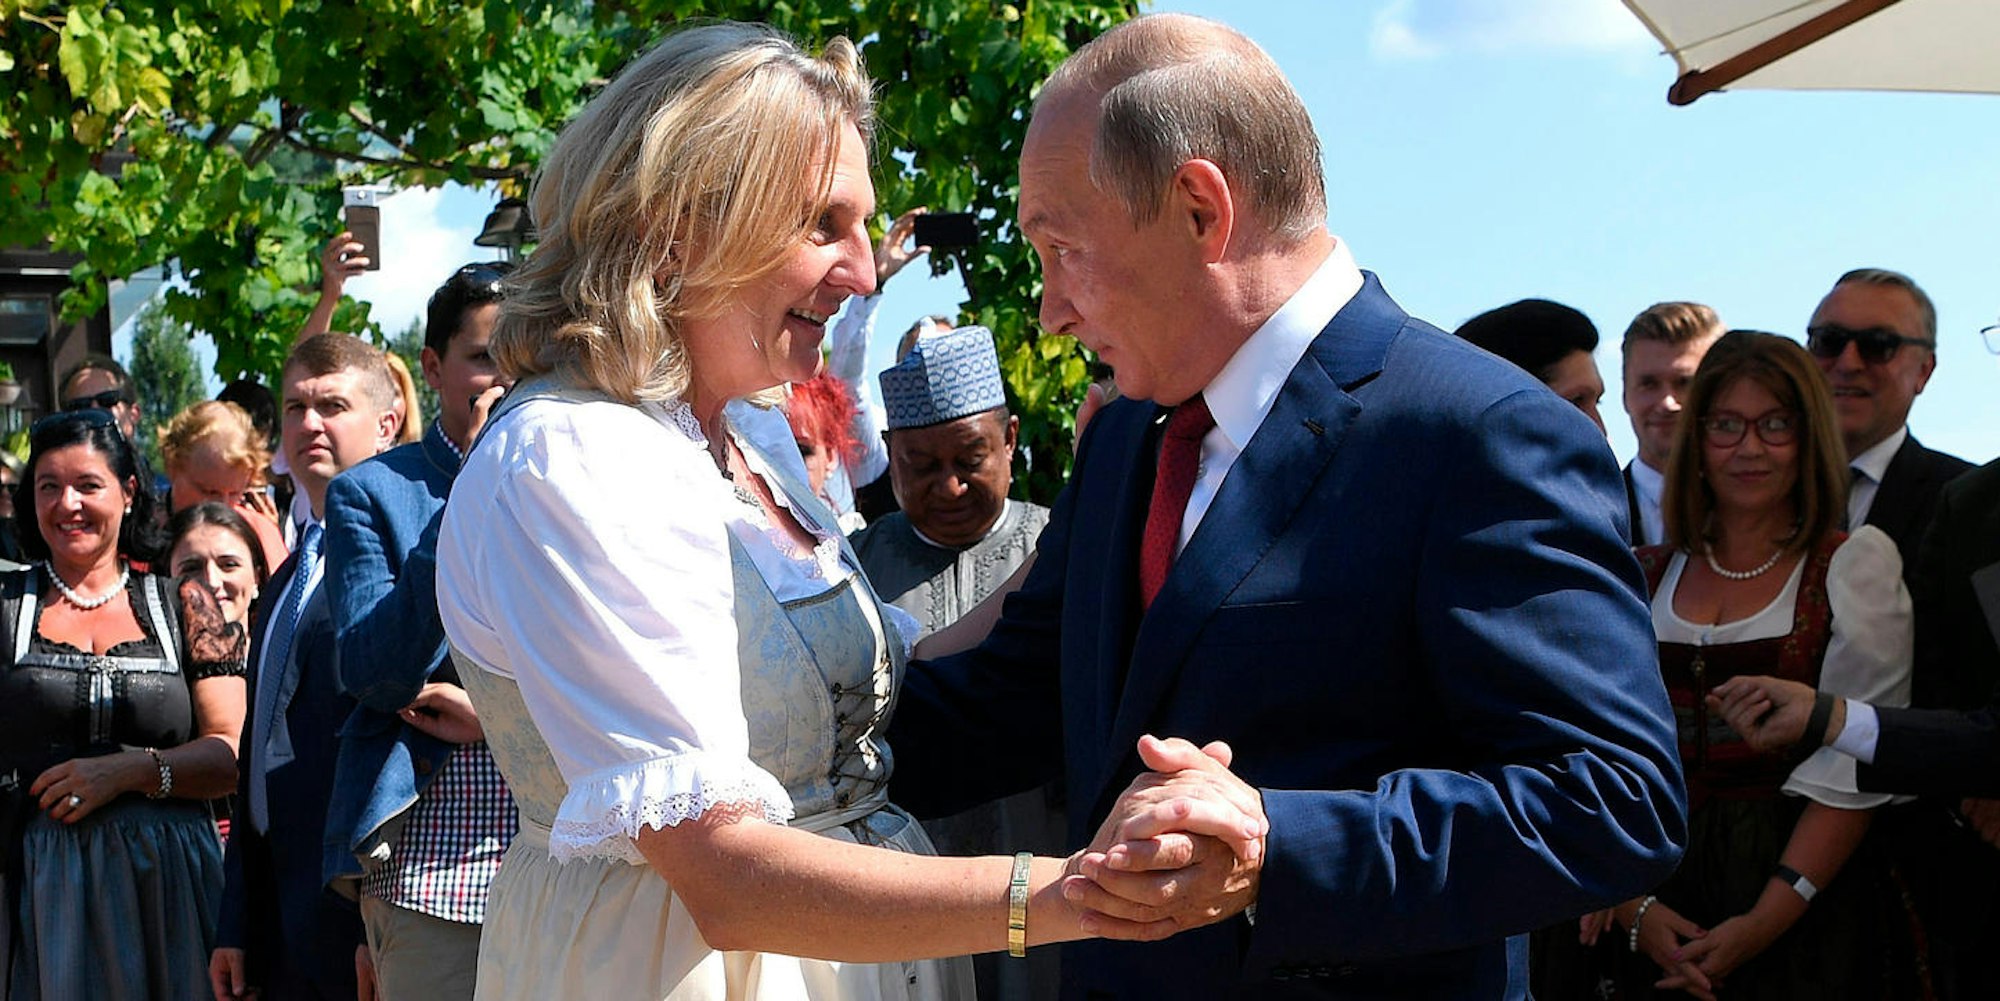 Bild Hochzeit Kneissl Putin